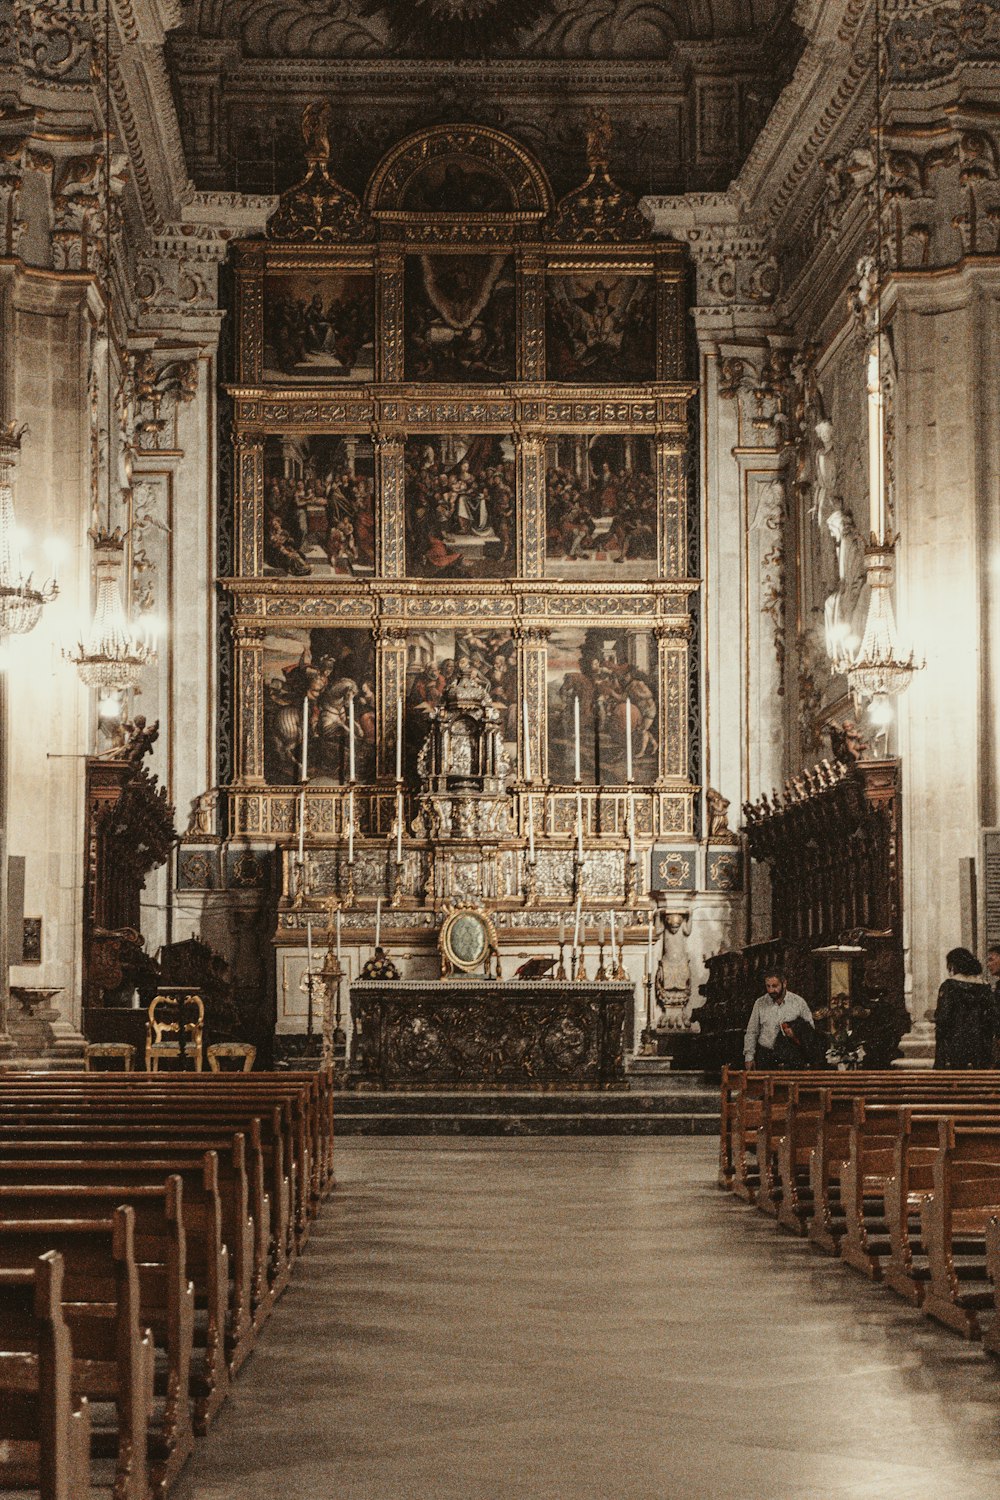 L'interno di una chiesa con banchi e dipinti sul muro